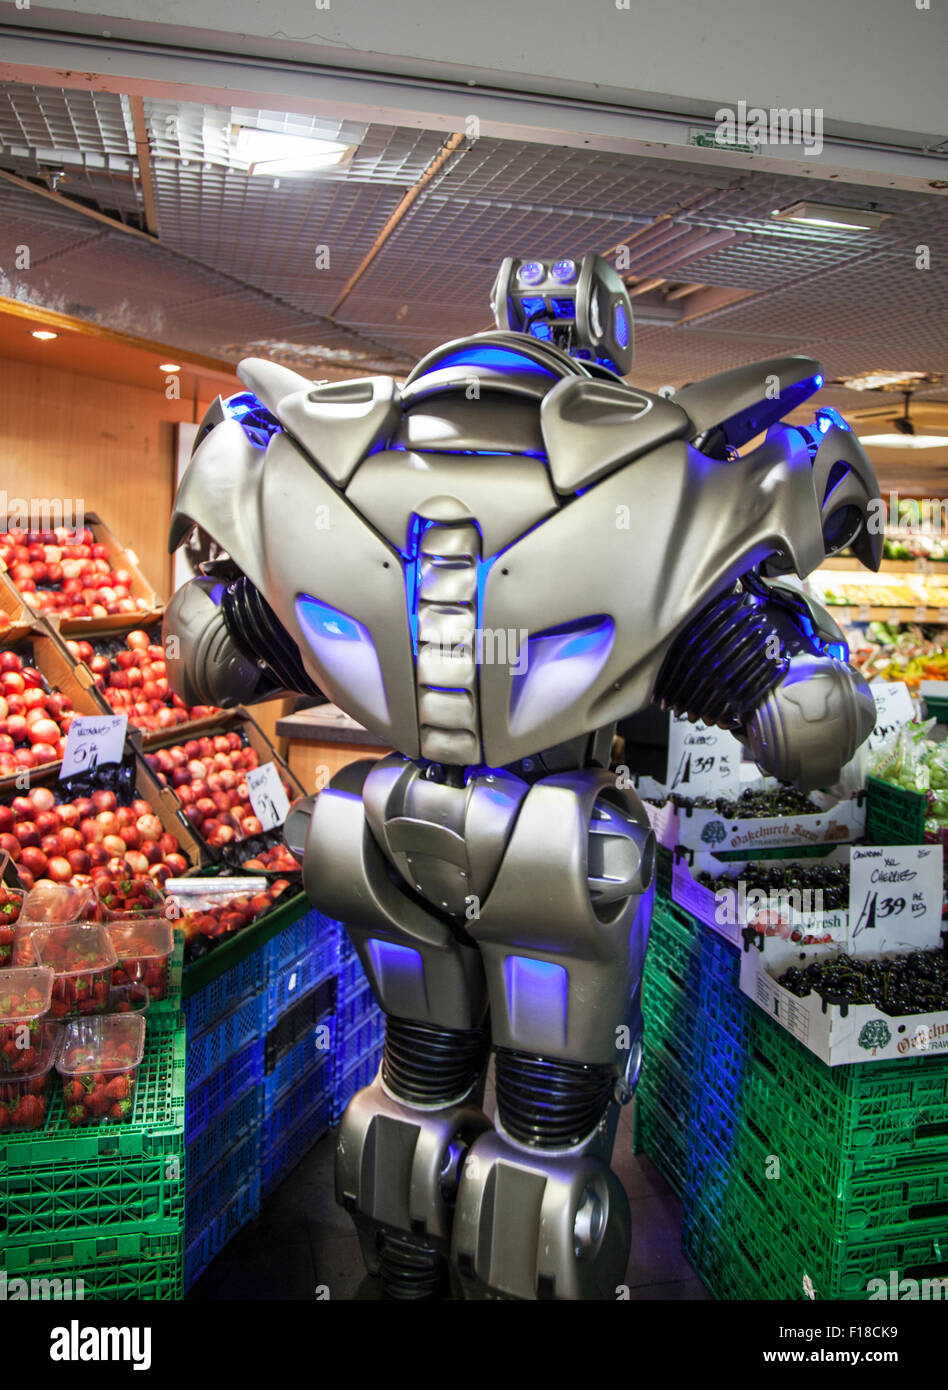 Preston, Lancashire, 29. August 2015. Schließen Enncounter als EXO Titan der Roboter visits St George's Center. Titan der Roboter die Bühne Name einer Kostüm von Cyberstein Robots Ltd. im Jahr 2004 erstellt wurde, ist es Metall Kostüm getragen nicht ein exoskelett. Der Roboter Kostüm ist ca. 2,4 m (7,9 ft.) hoch und 60 kg (9.4) und steigt auf 350 kg (55) Einschließlich der Warenkorb Sie reitet auf Ausrüstung und. Das Gesicht sieht aus wie ein Schädel, und einige haben es sogar an einen Transformator im Vergleich. Stockfoto